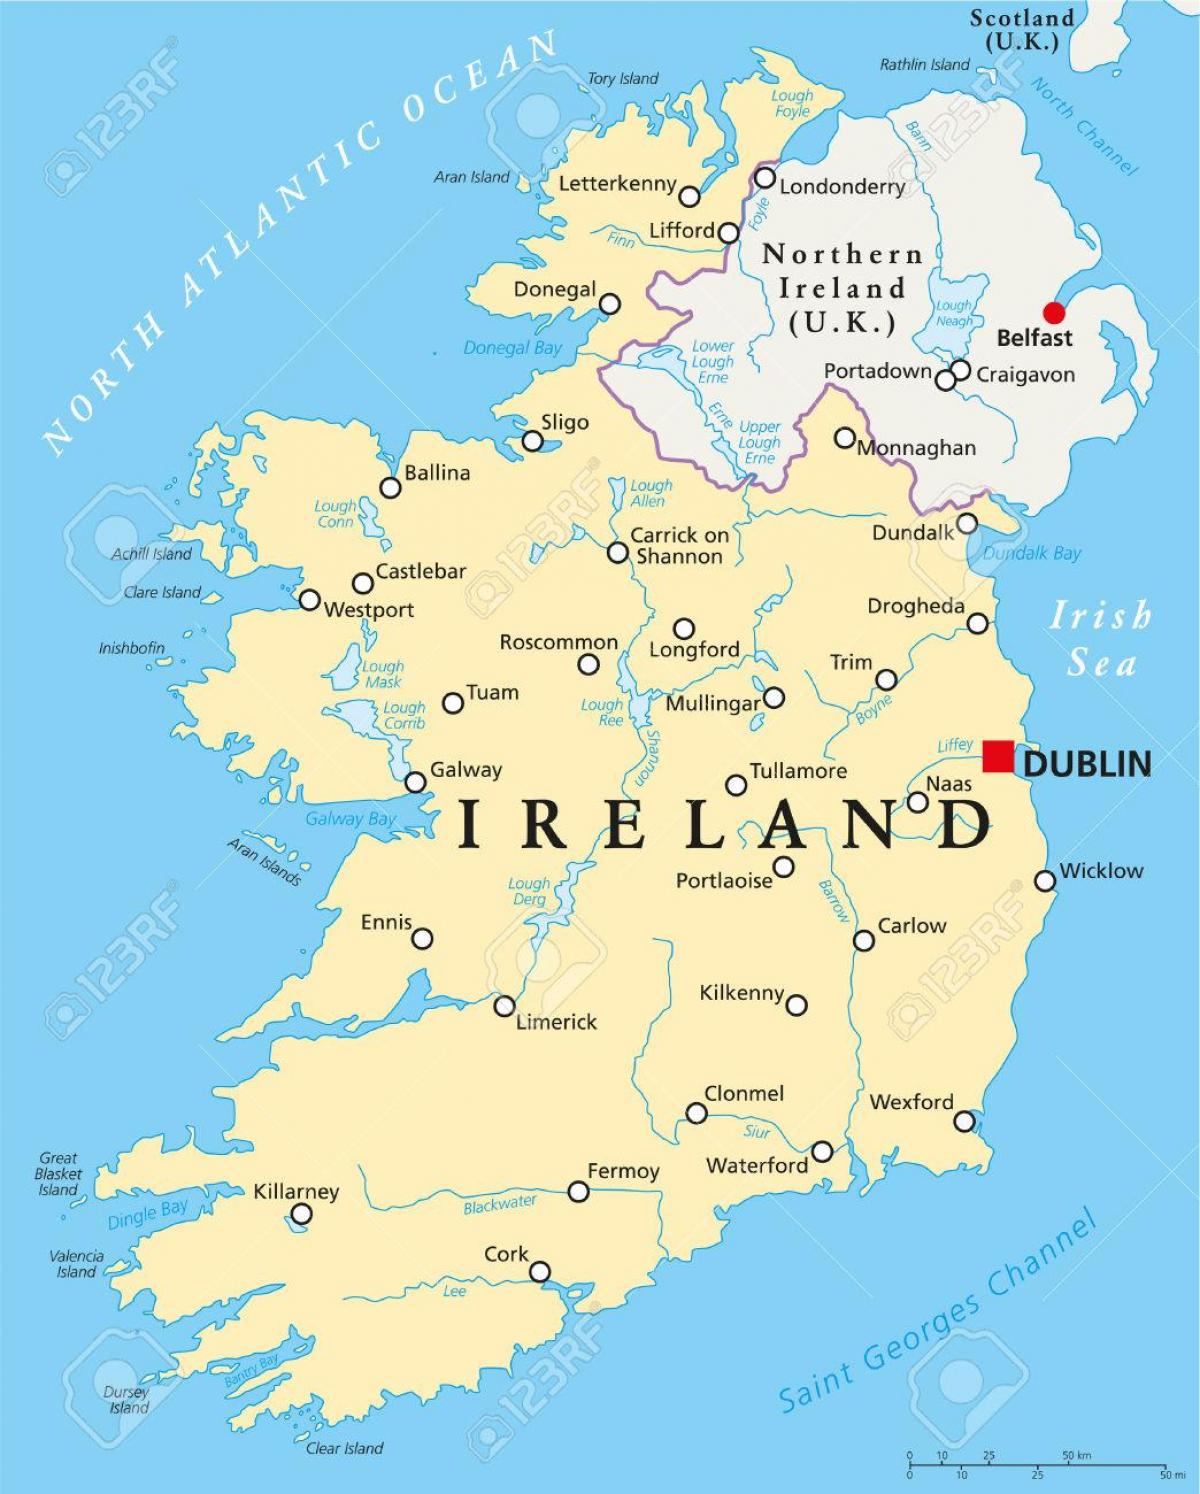 Dublin peta ireland